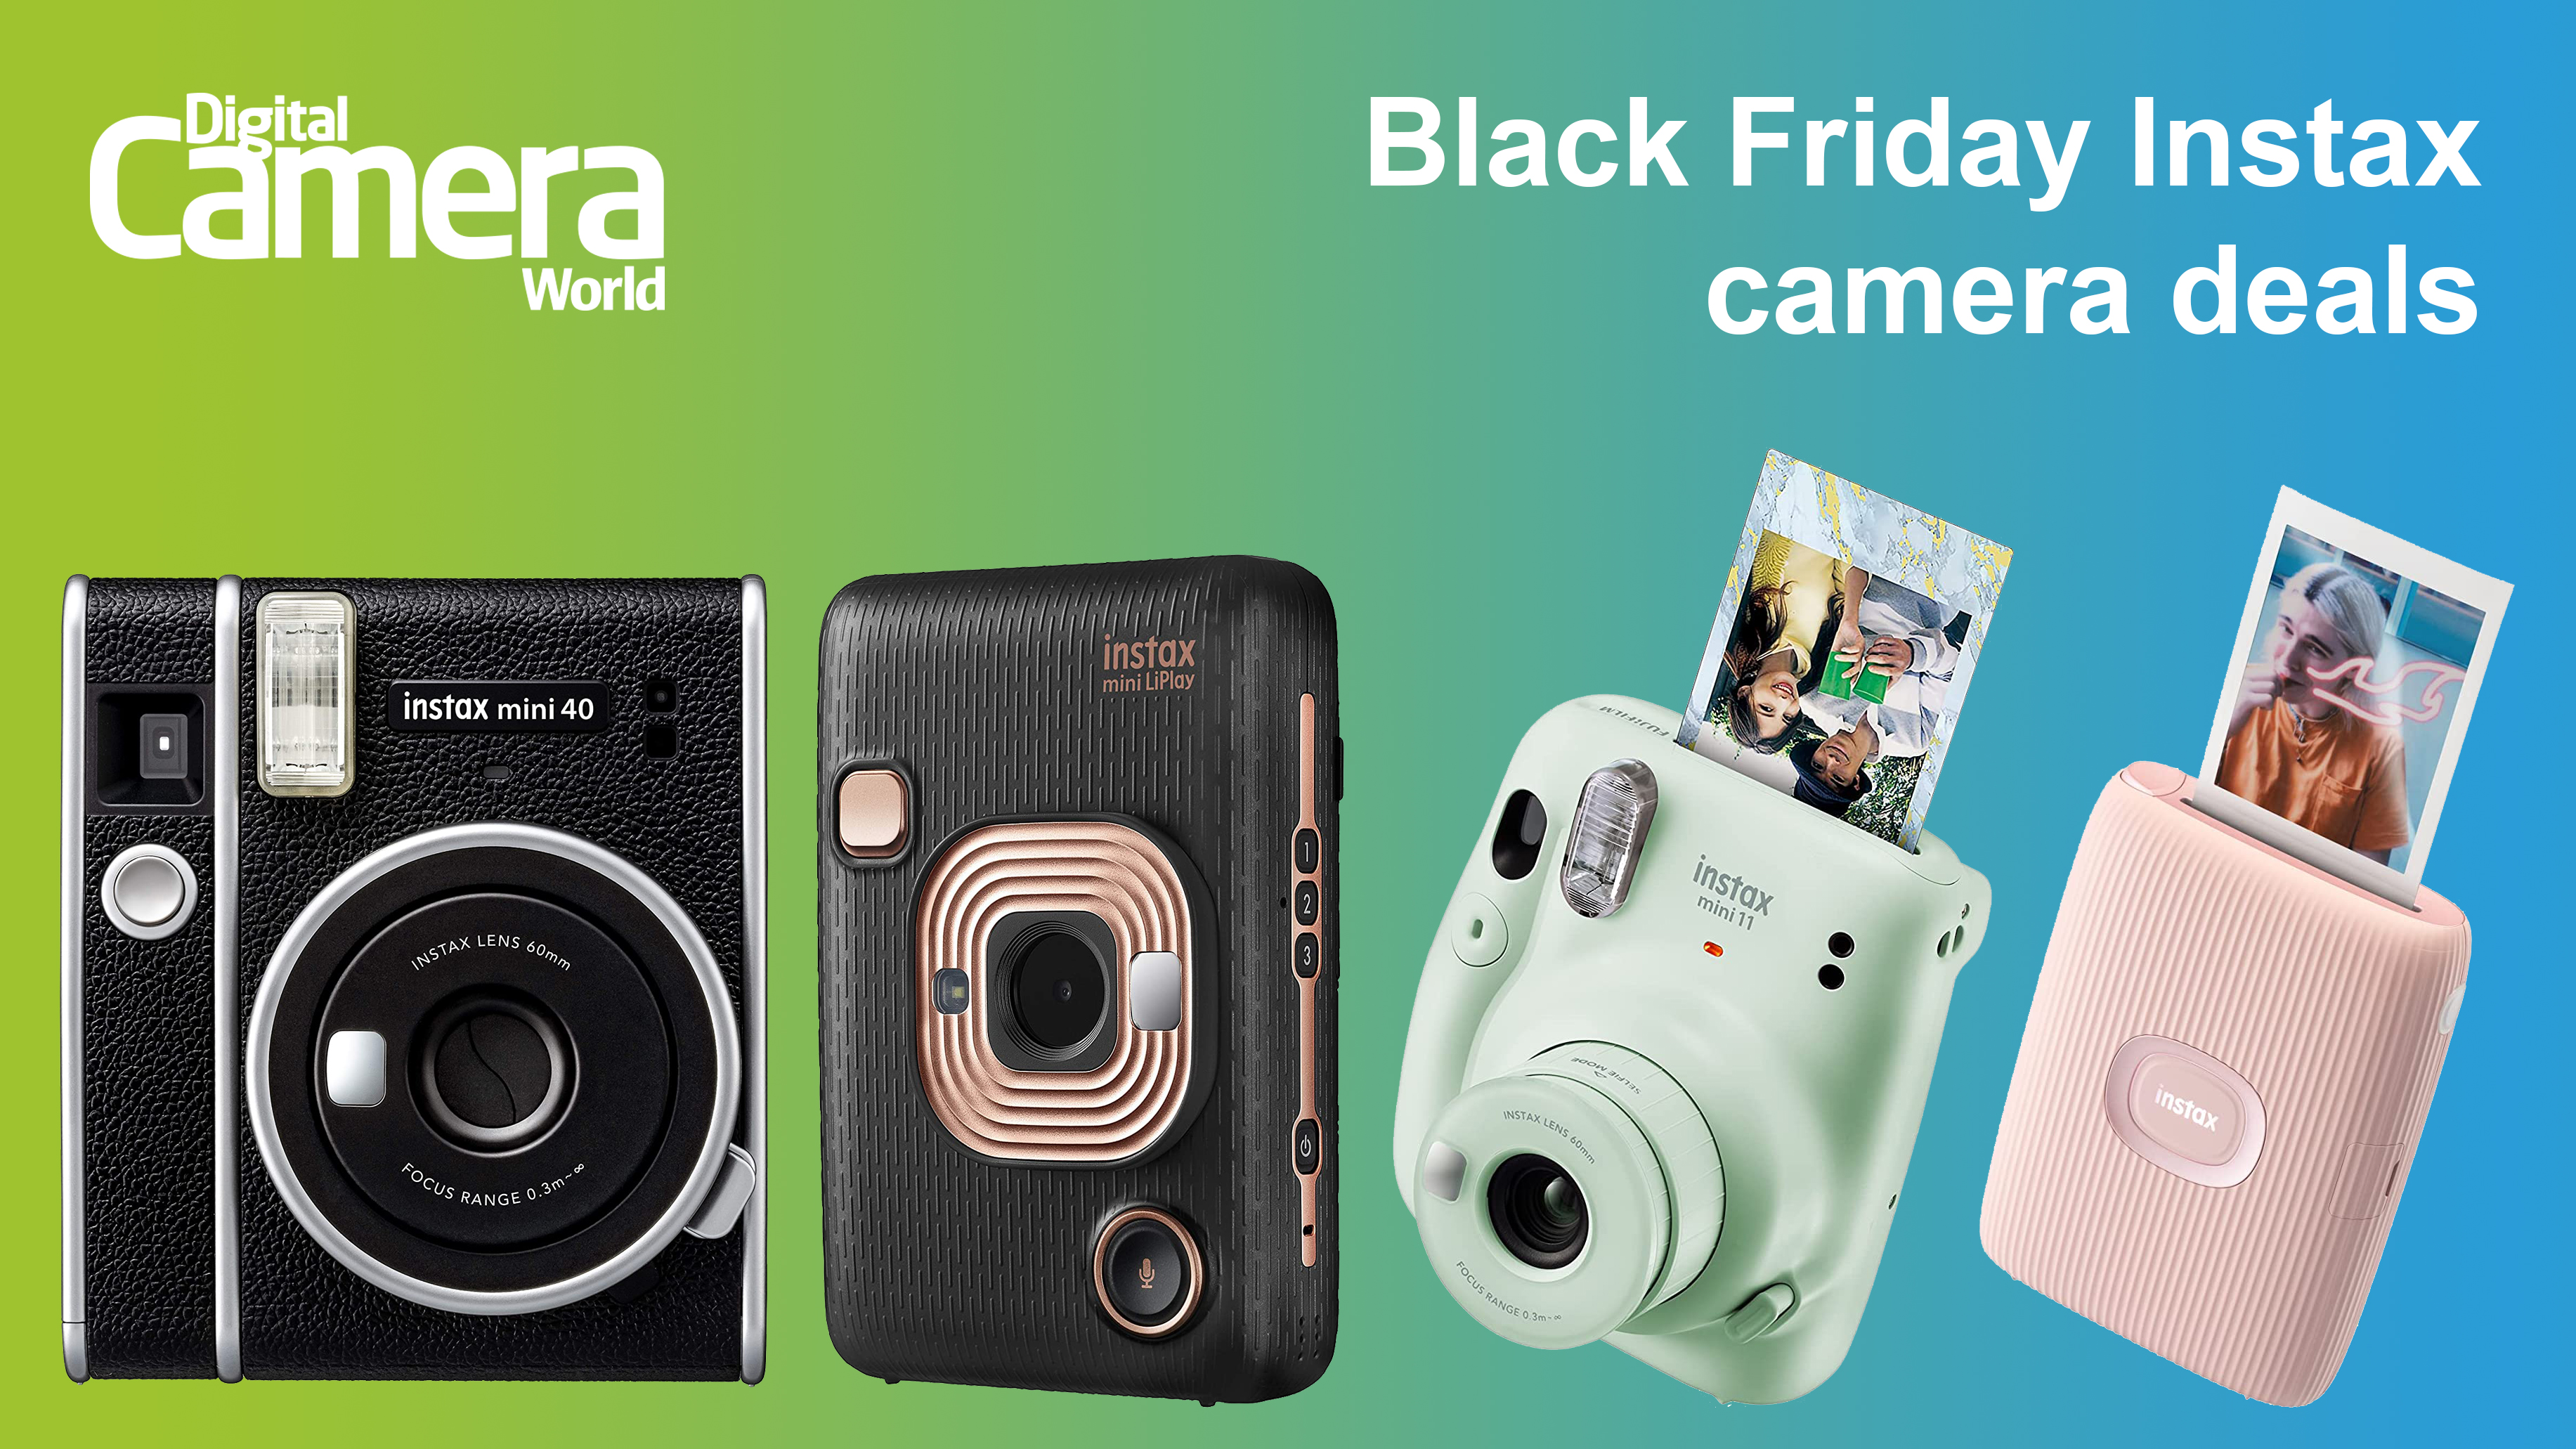 Verlammen Maxim rechtbank Best Black Friday Instax camera deals | Digital Camera World